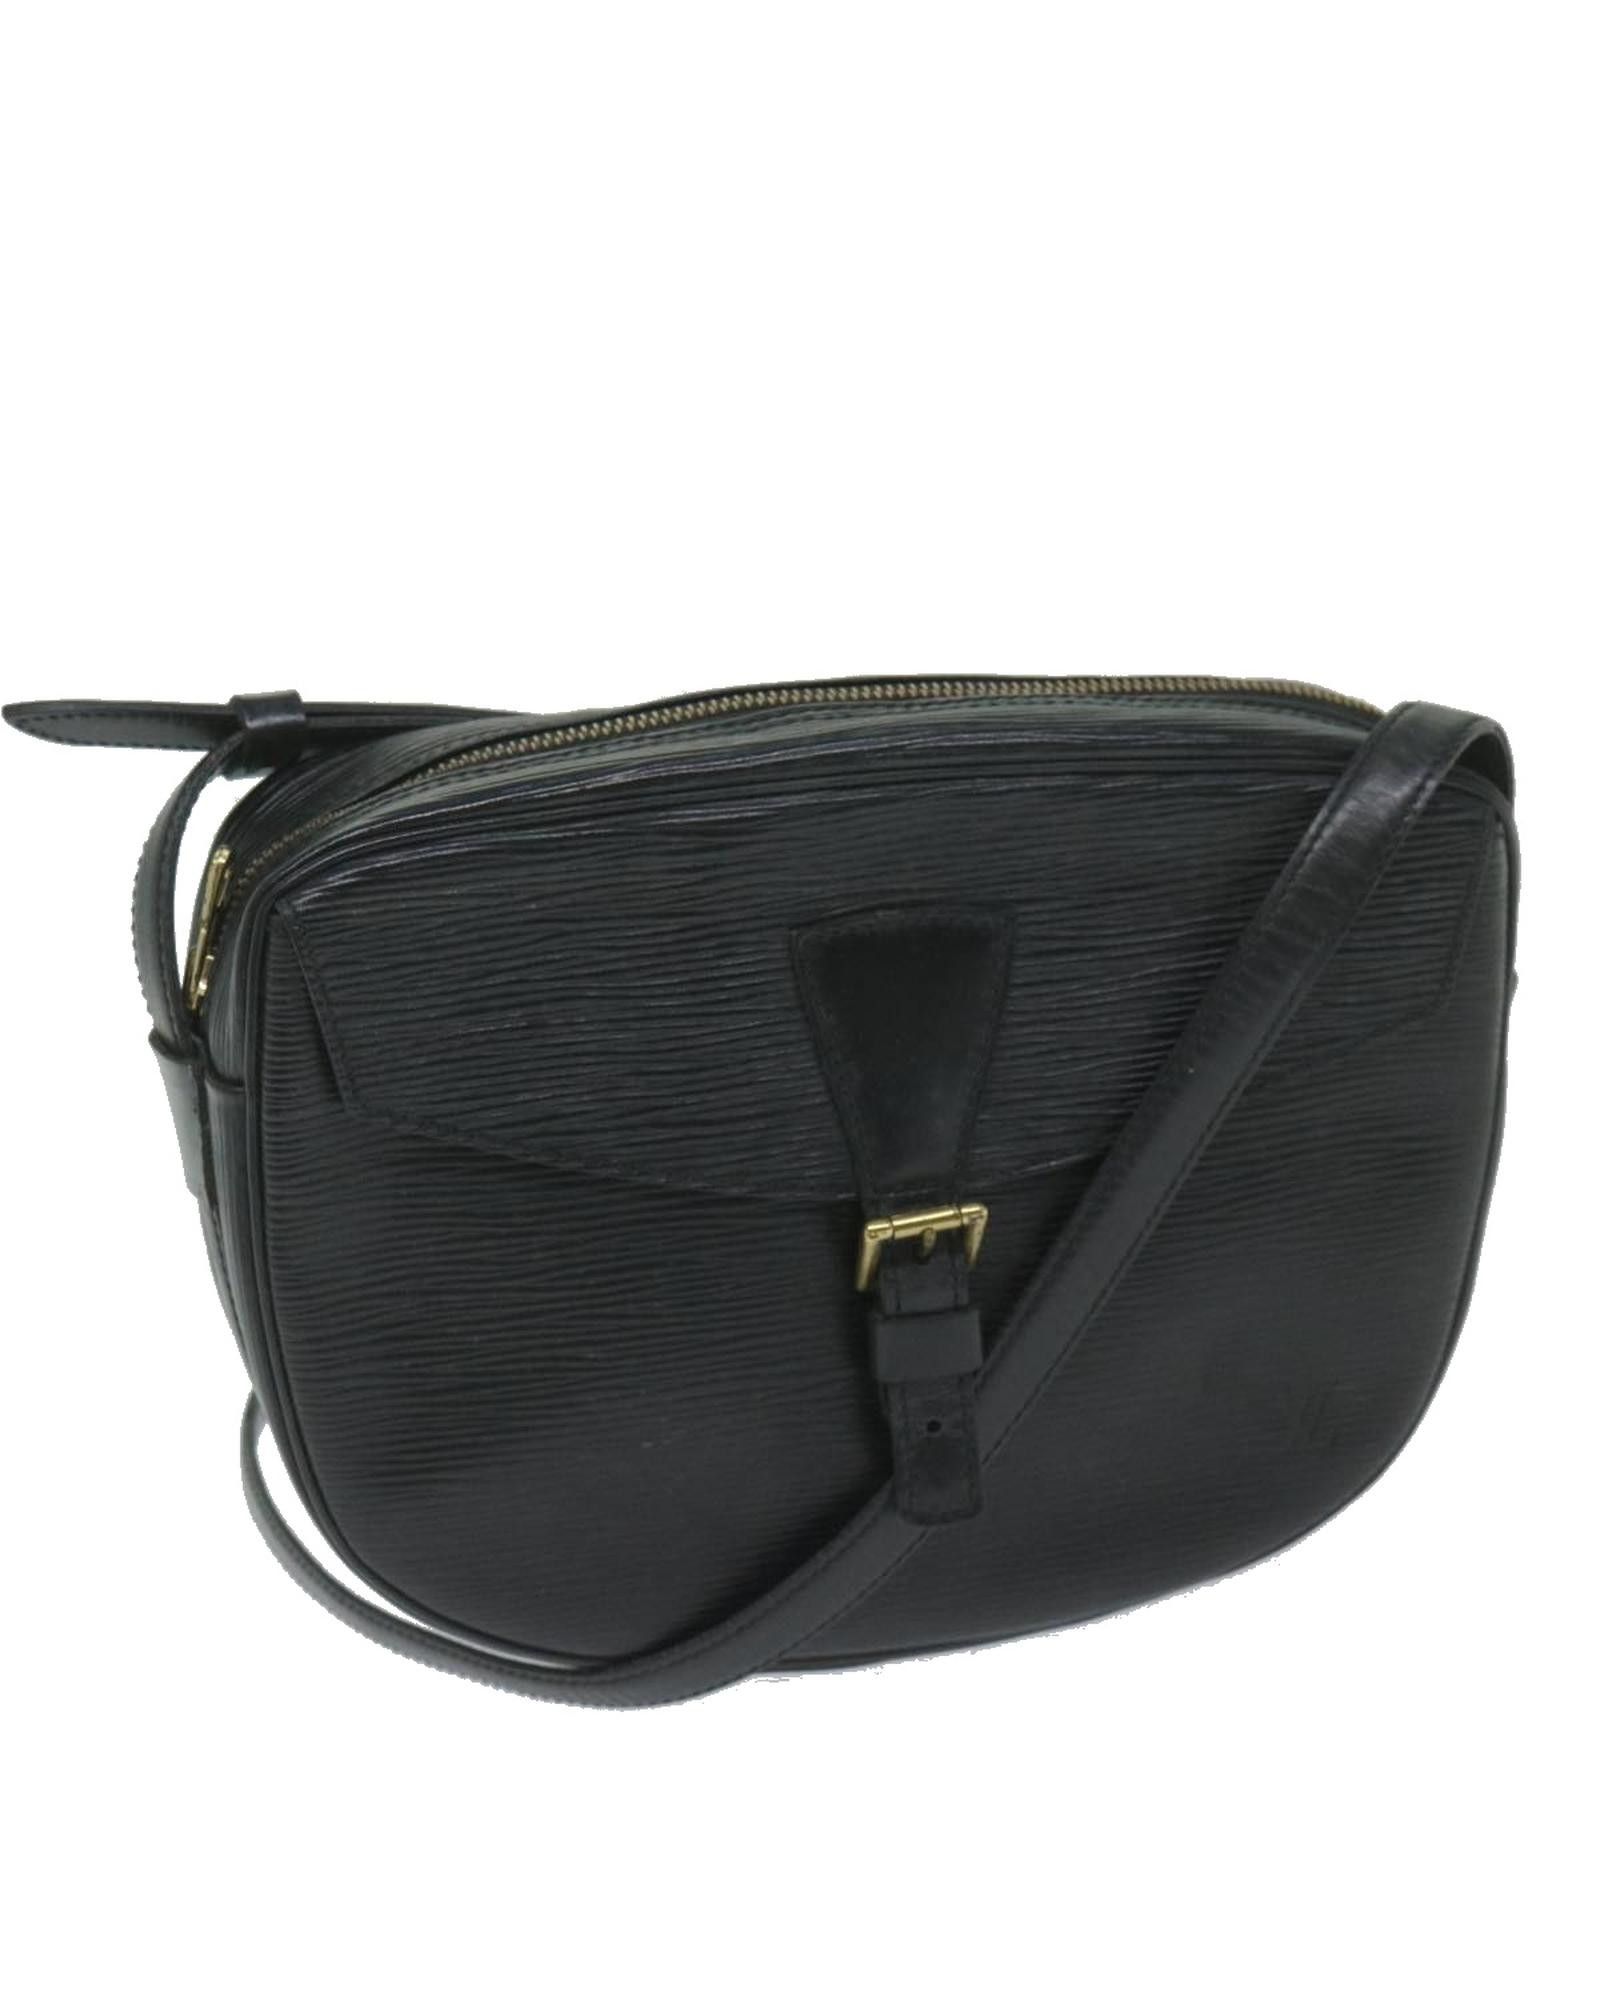 Louis Vuitton Black Epi Leather Shoulder Bag with Adjustable Strap ...